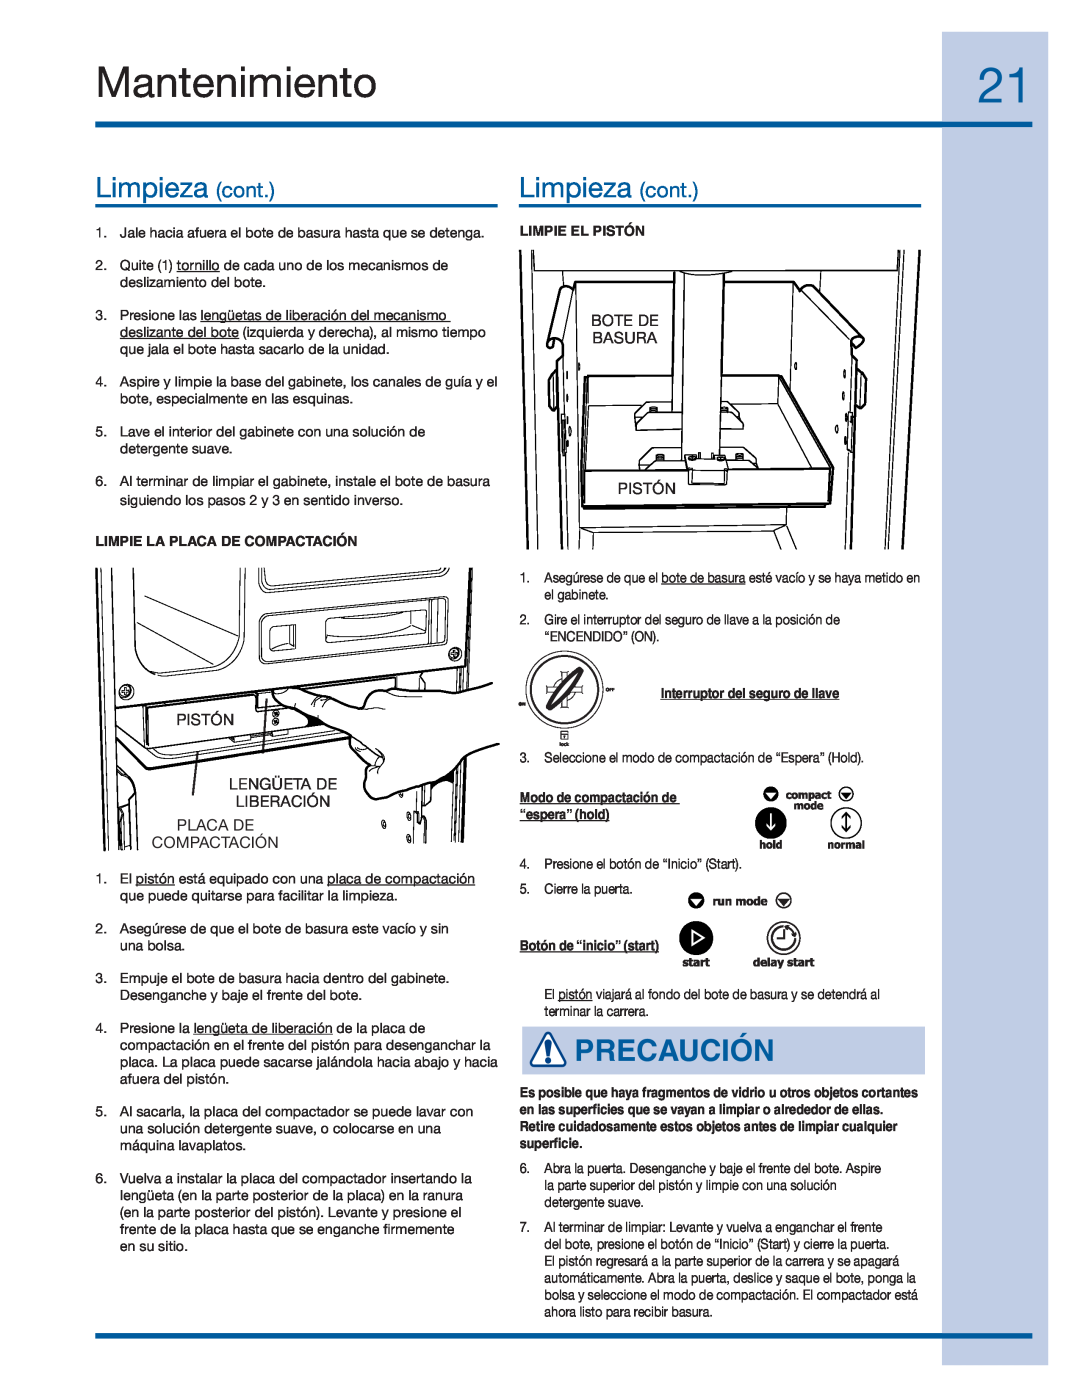 Electrolux E15TC75HPS manual Limpieza cont, Mantenimiento, Precaución, Limpie La Placa De Compactación, Limpie El Pistón 